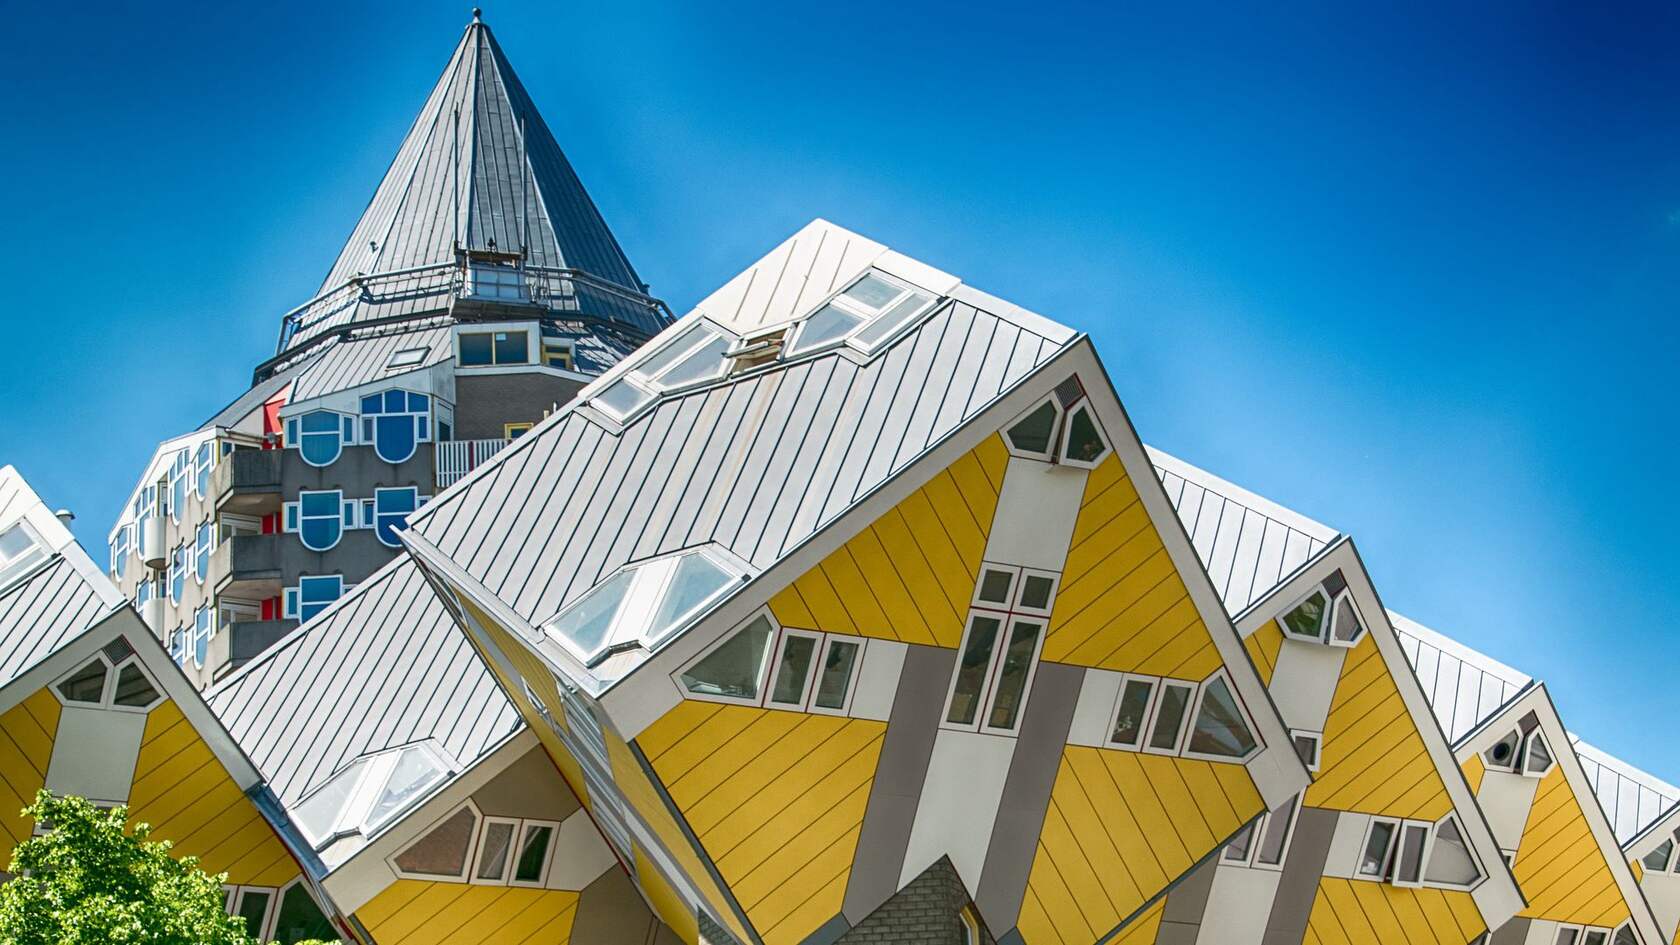 欧洲 荷兰 鹿特丹 创意 设计感十足的奇特立方体房子壁纸图片第1张图片